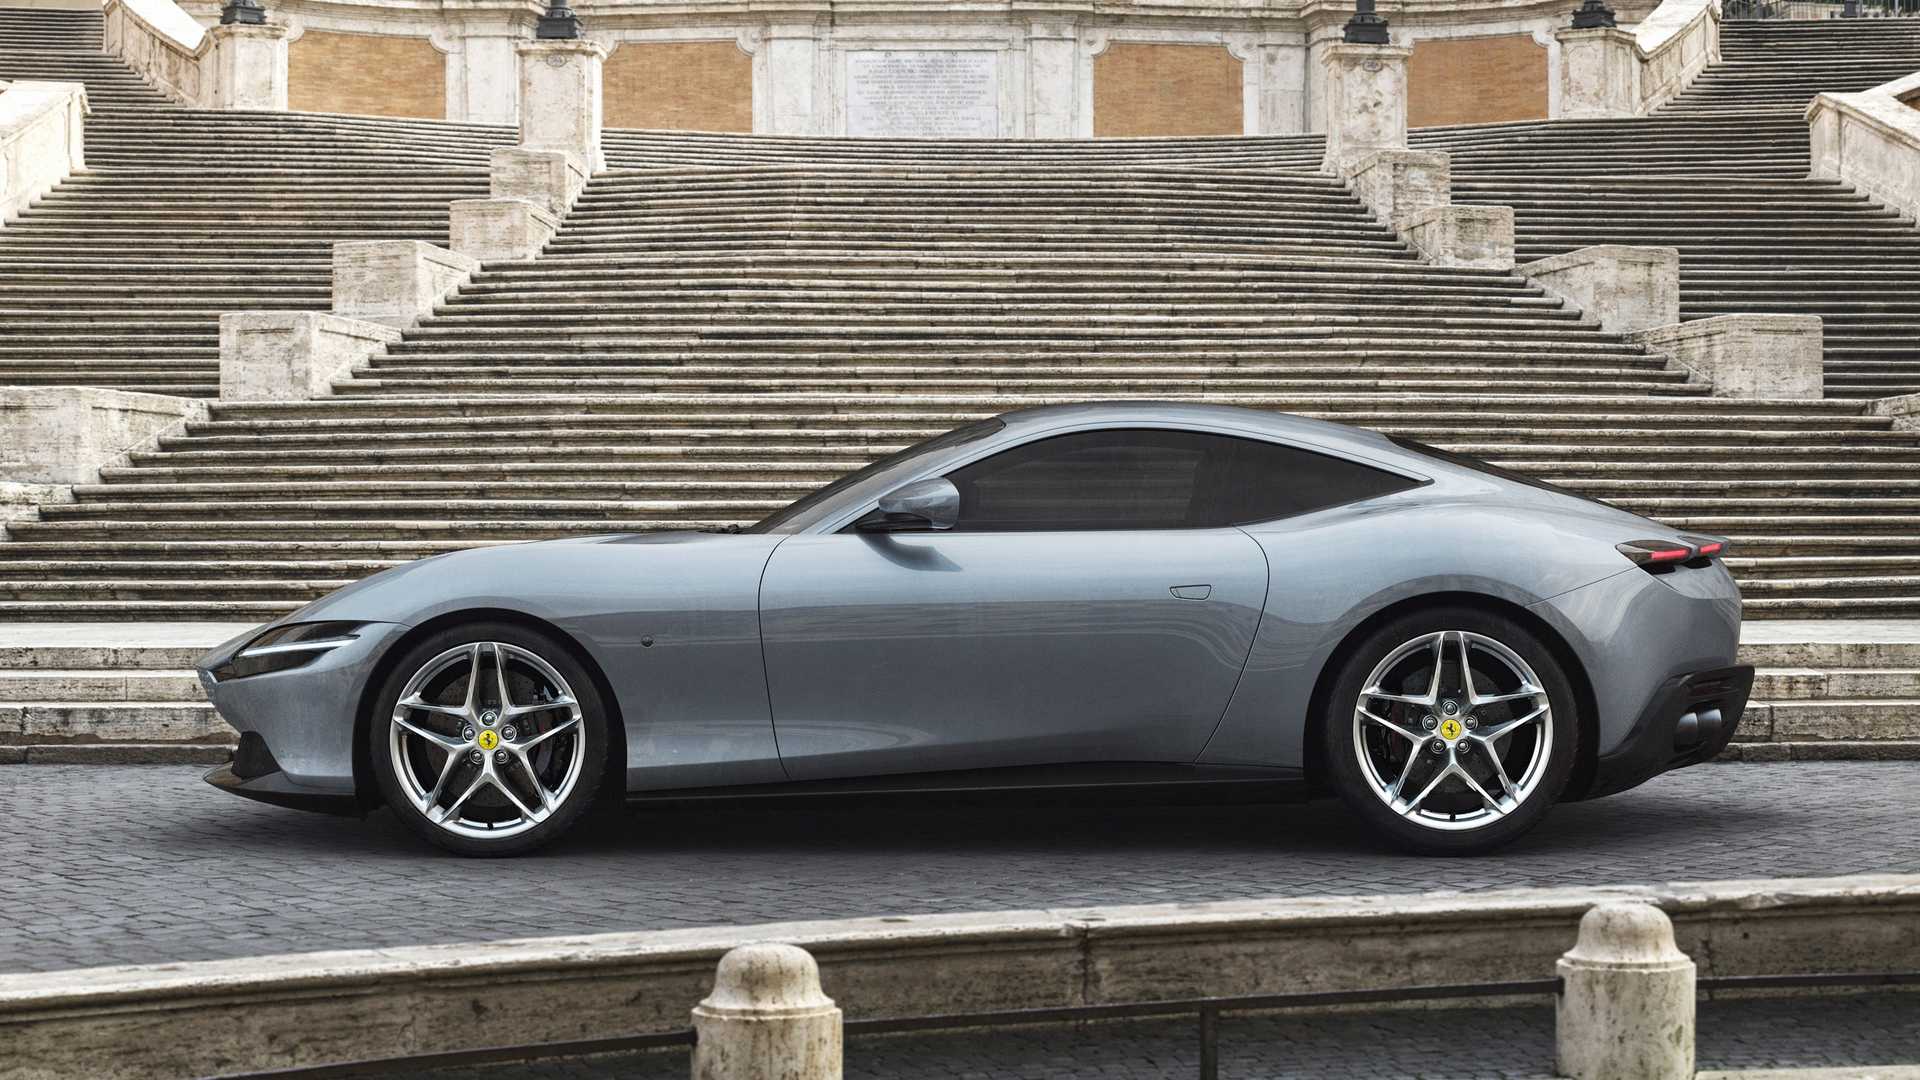 ชาวไทยรอชม! Ferrari Roma เสน่ห์แห่งกรุงโรมในรูปแบบยนตรกรรมเตรียมเปิดตัว 10 มิ.ย.นี้